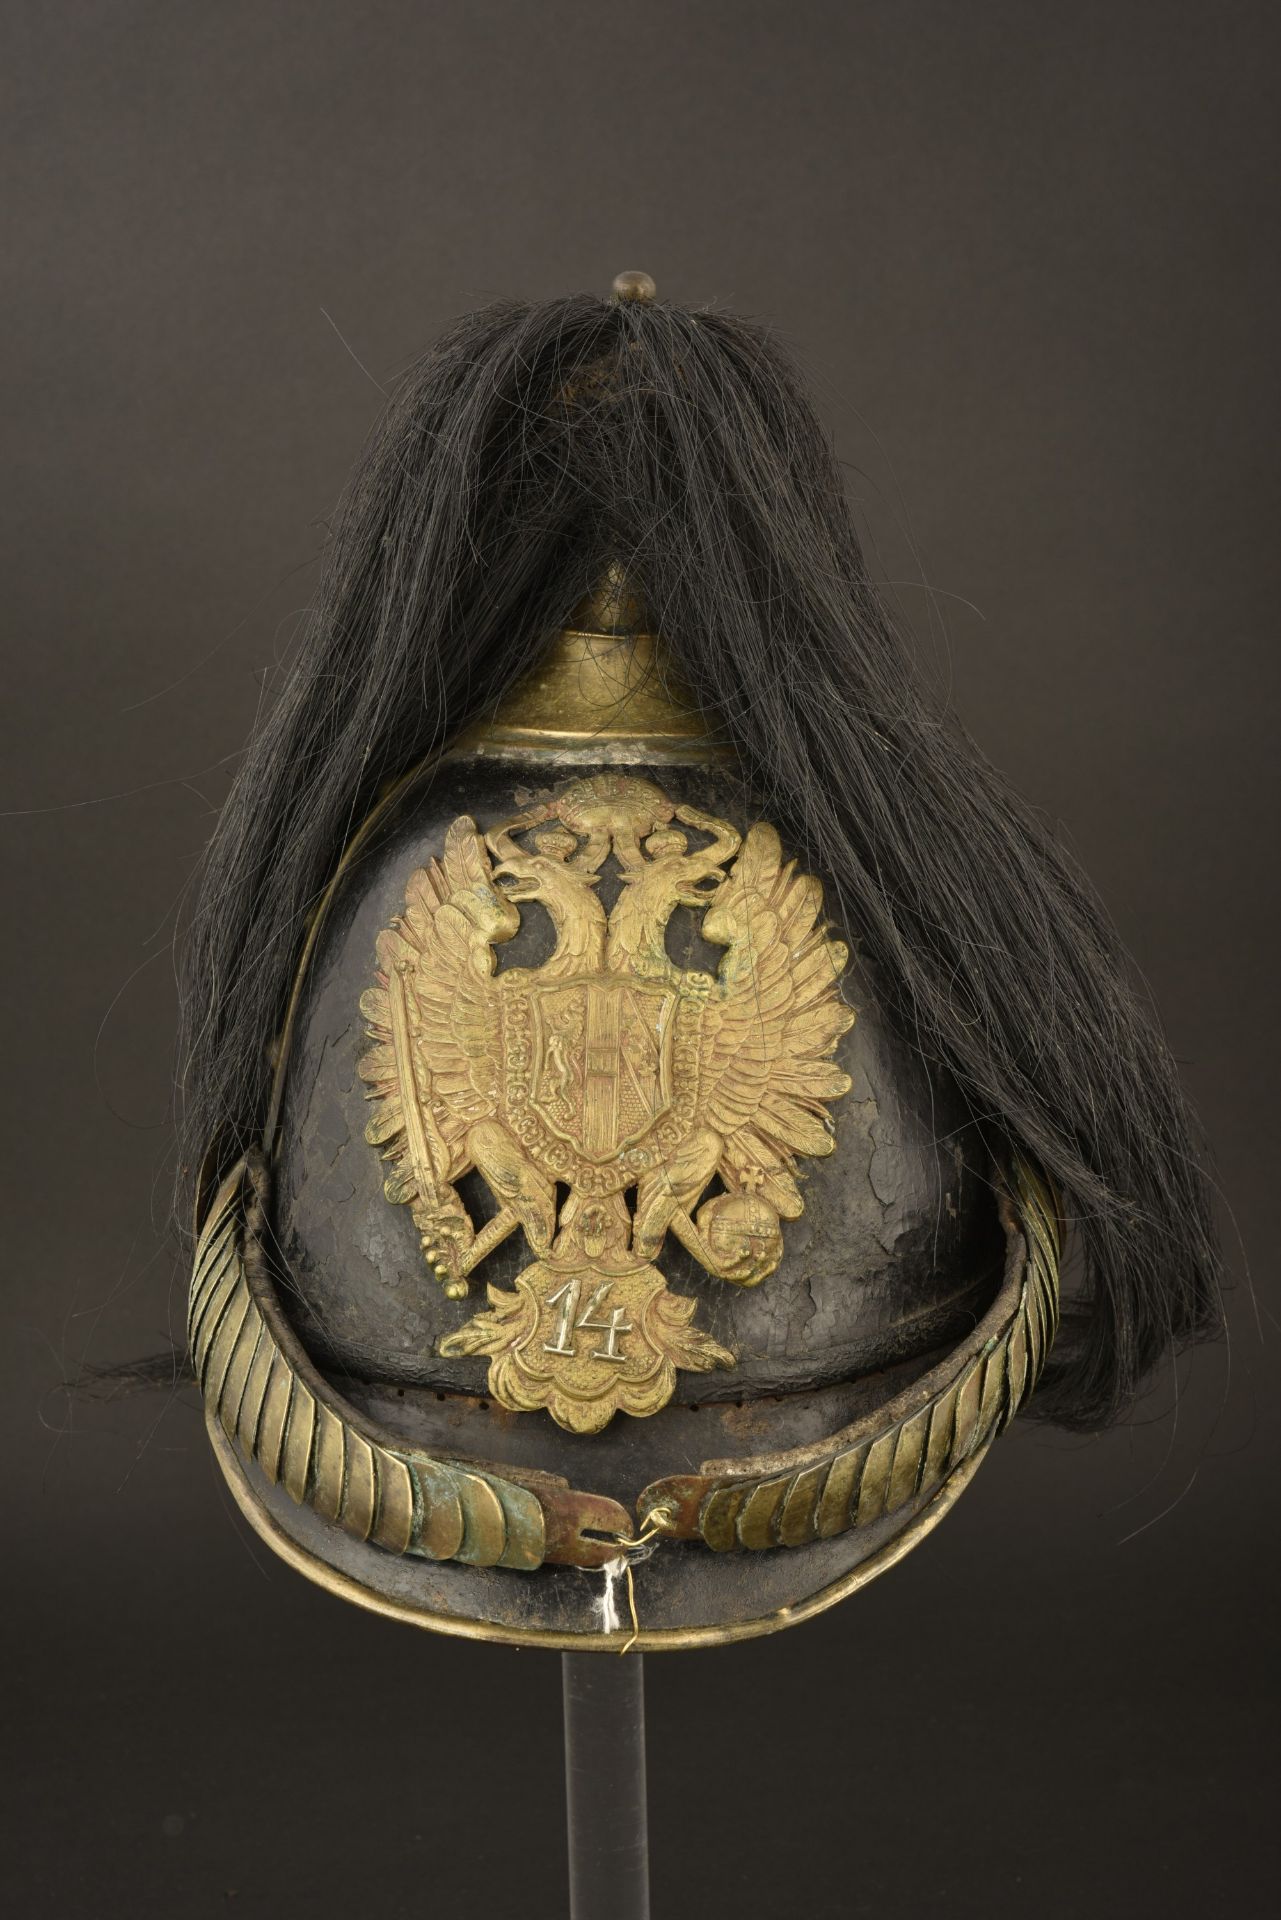 Casque autrichien M1850 de Gendarmerie. Austrian Gendarmerie helmet pattern 1850. Kuk Gendarmerie He